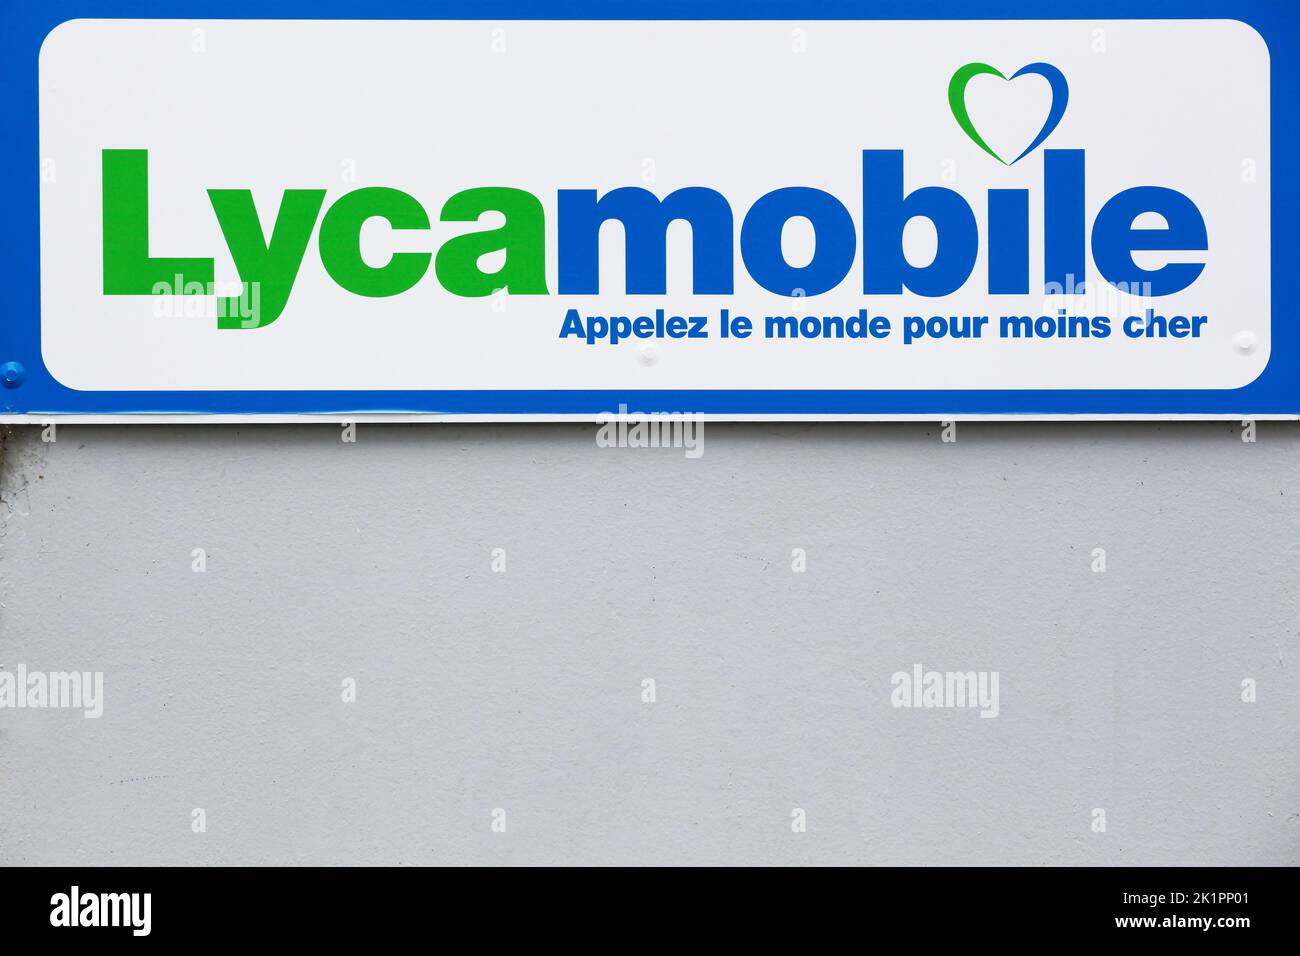 Saint Etienne, Francia - 21 de junio de 2020: Logotipo de Lycamobile en una pared. Lycamobile es un operador de redes virtuales móviles que opera en 22 países Foto de stock